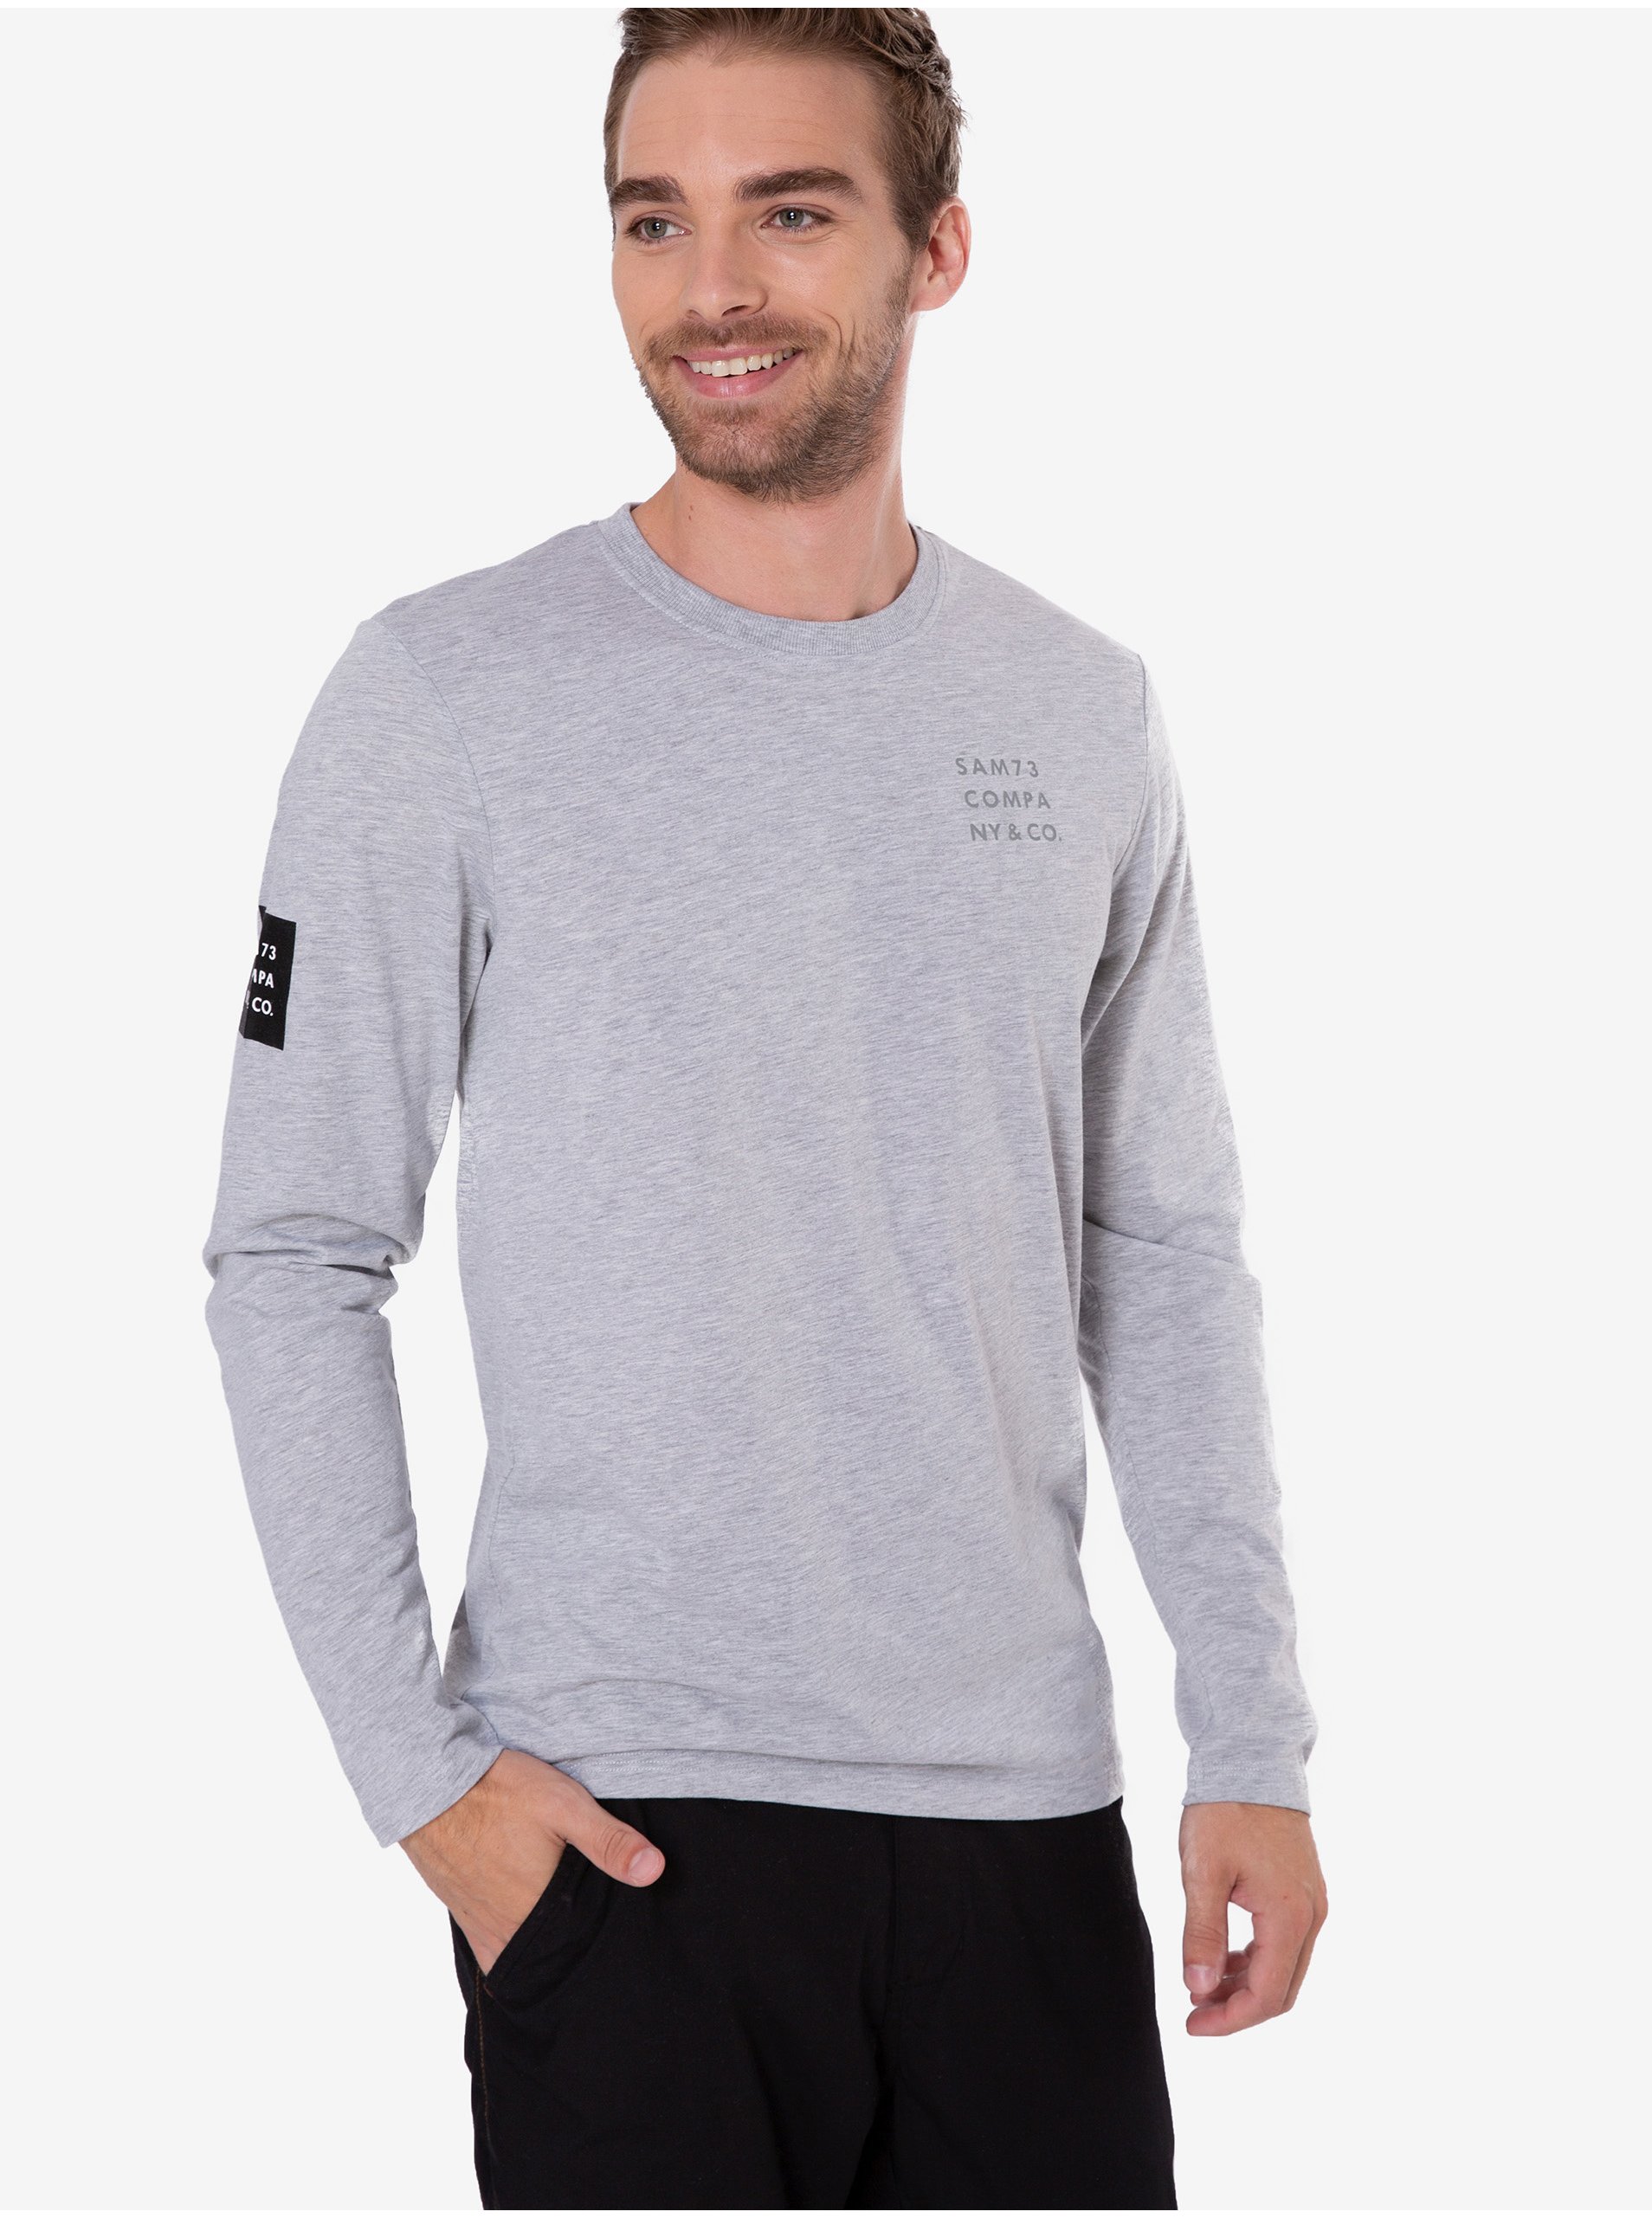 E-shop Světle šedé pánské žíhané tričko Sam 73